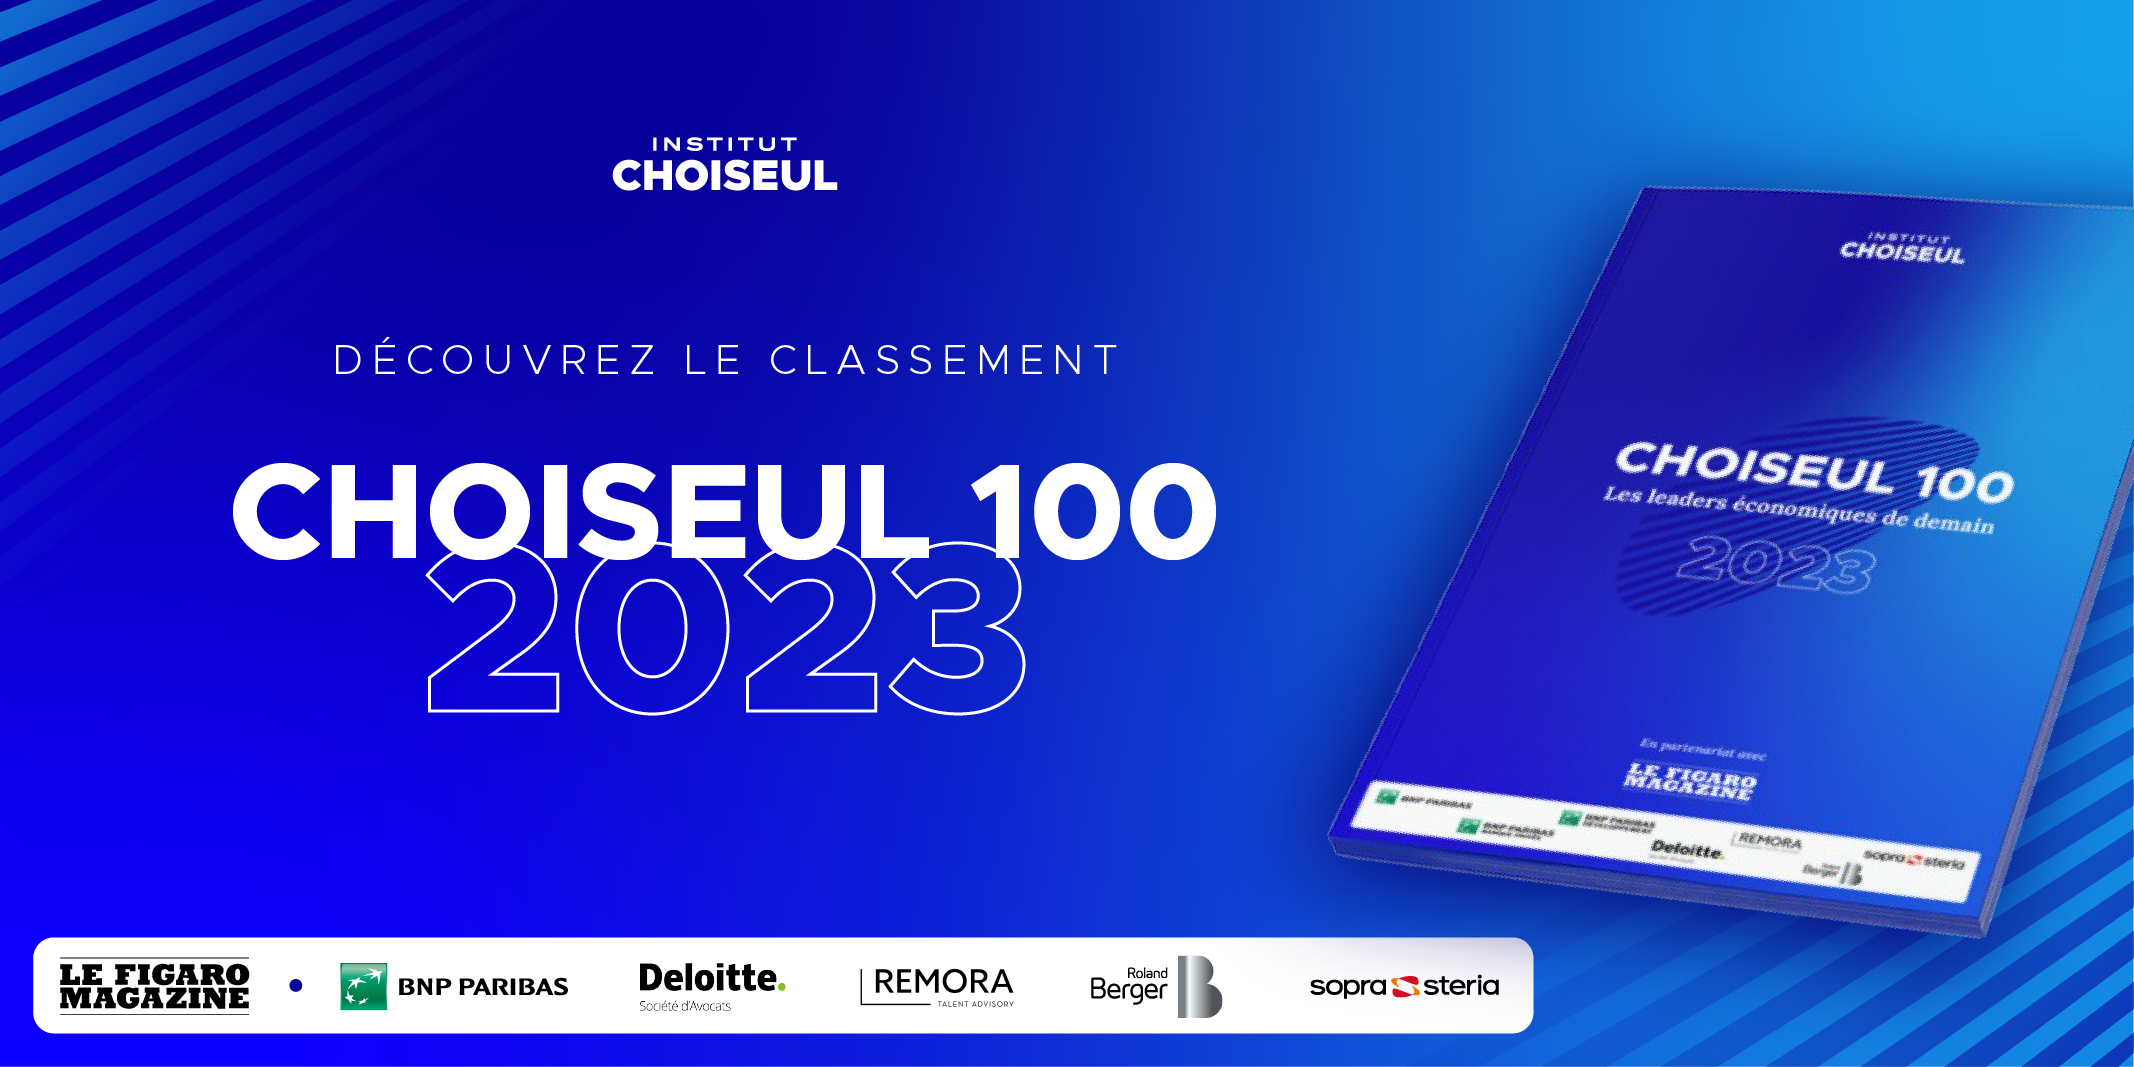 Choiseul 100 : L’Institut Choiseul révèle son classement des leaders économiques de demain